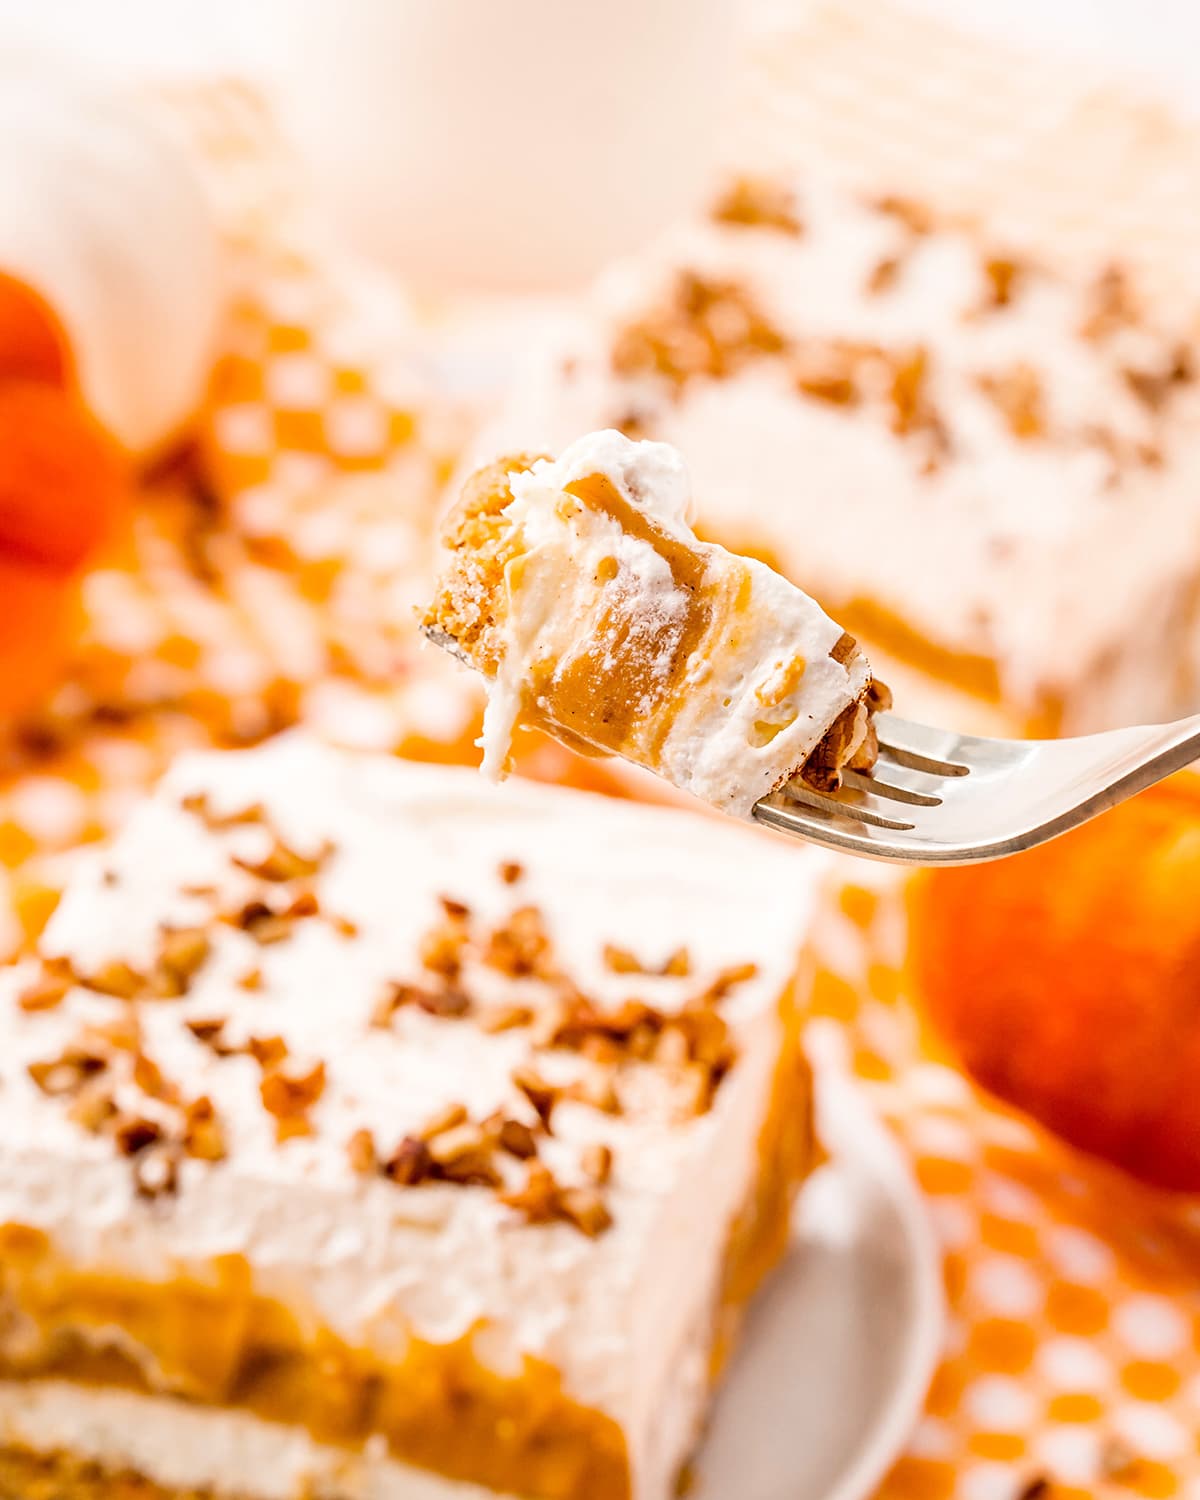 A bite of a pumpkin dessert on a fork.